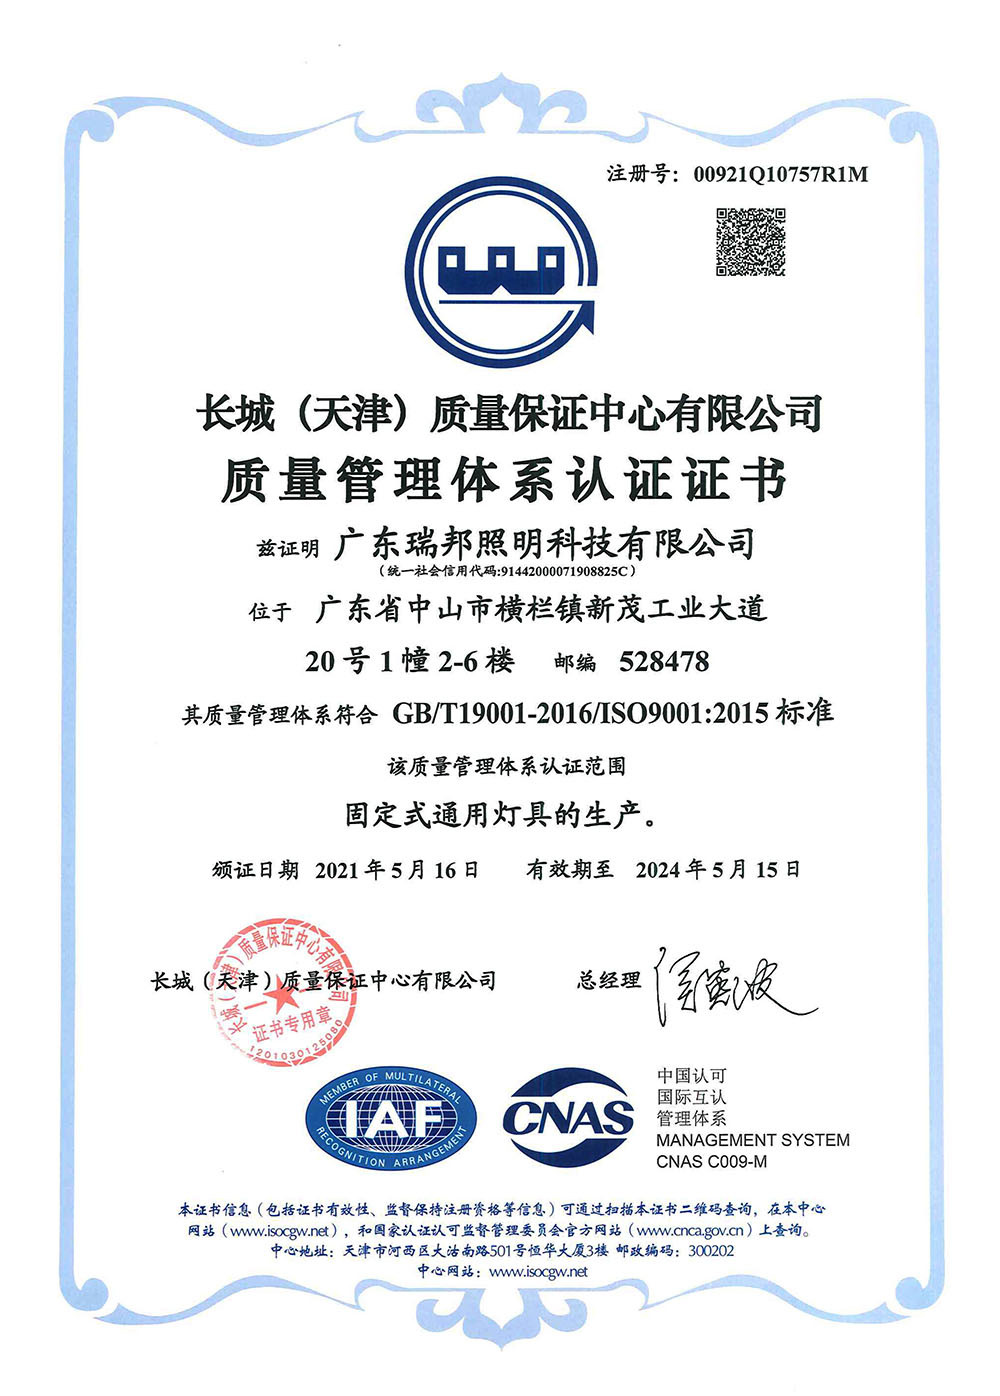 质量管理体系ISO9001副本 证书中文